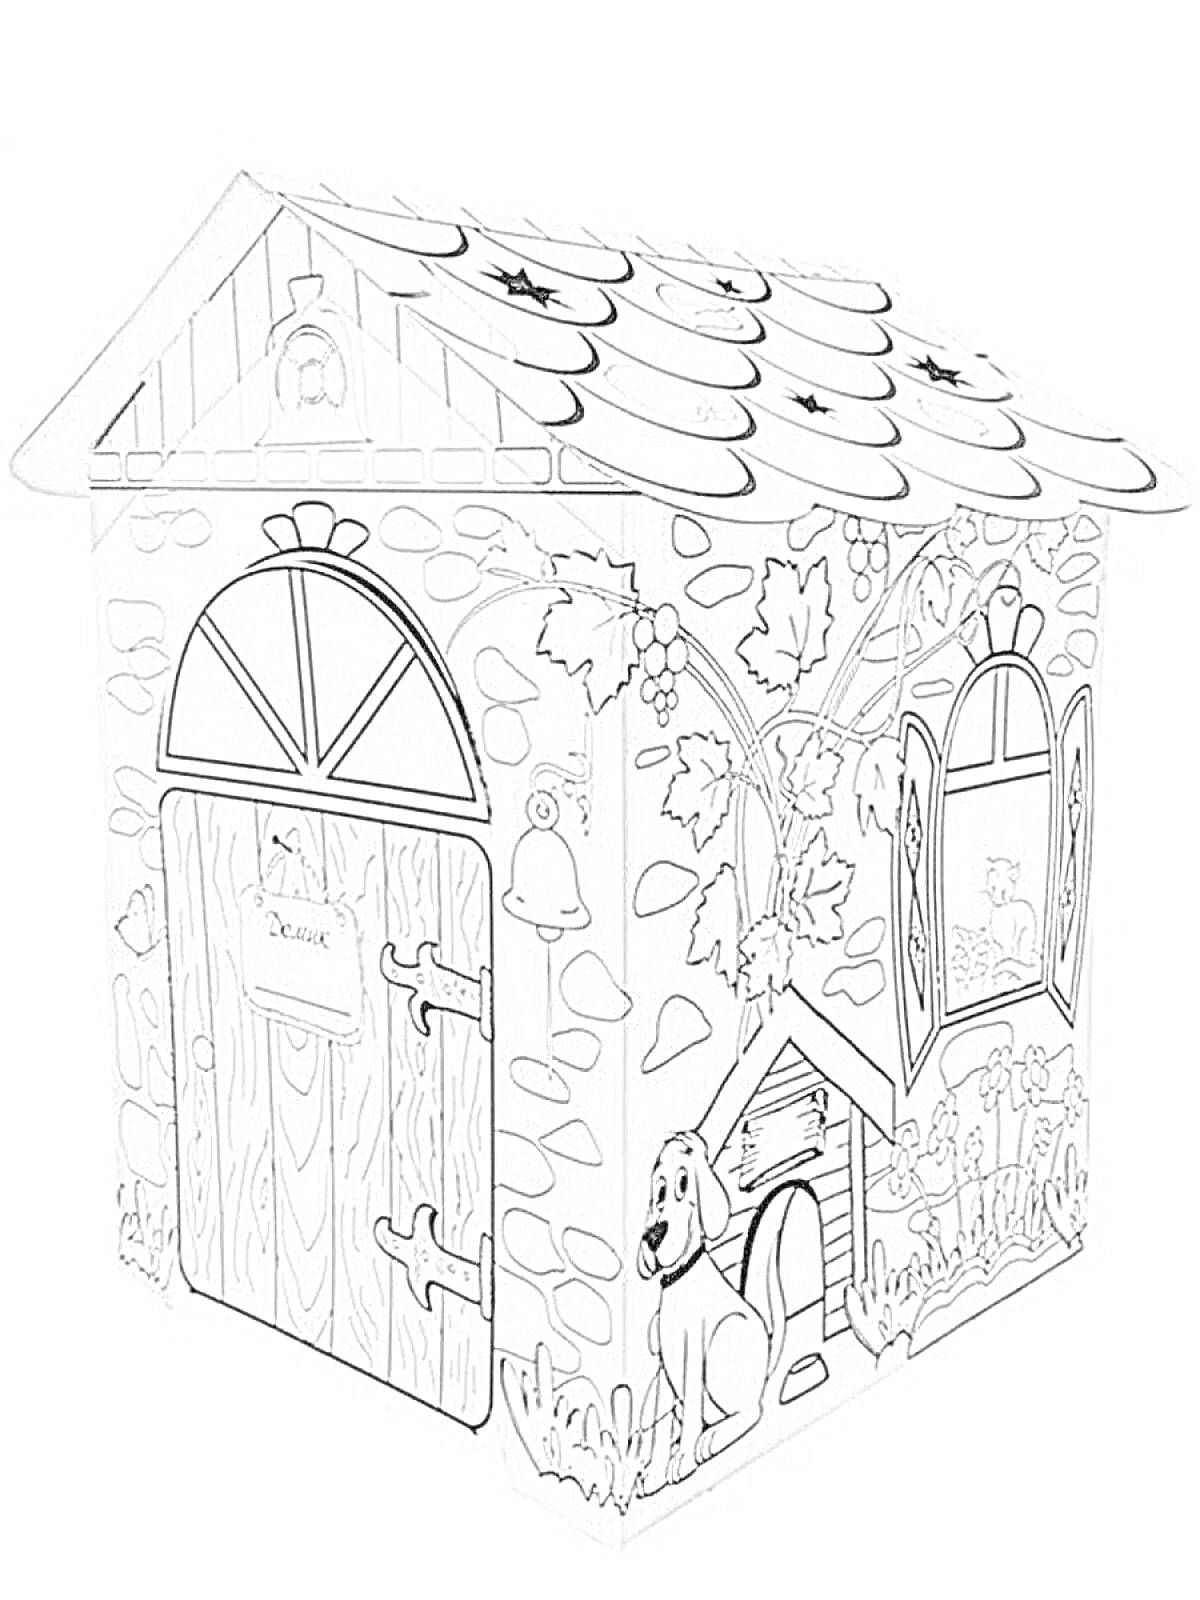 Раскраска Картонный домик для раскрашивания с изображением двери, окон, собаки, кустарников, каменной кладки и крышами, покрытыми черепицей.